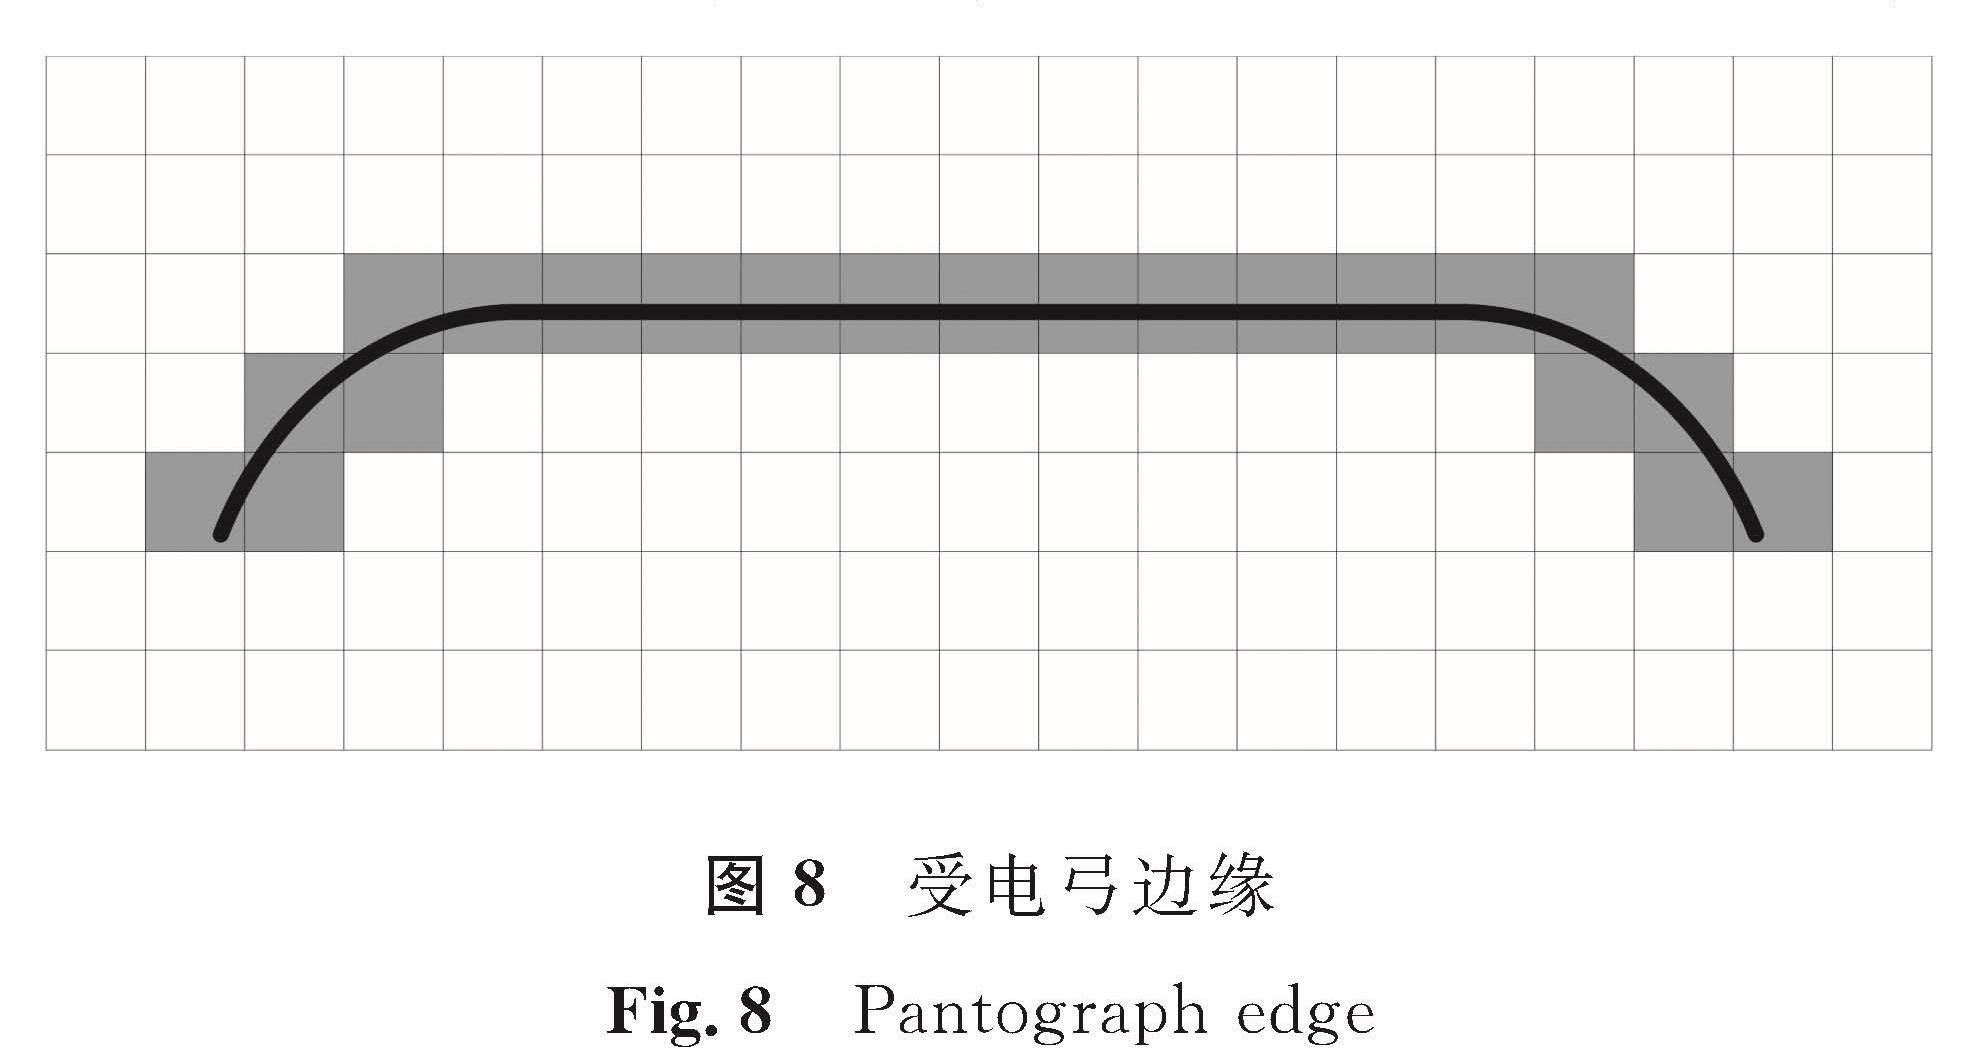 图8 受电弓边缘<br/>Fig.8 Pantograph edge